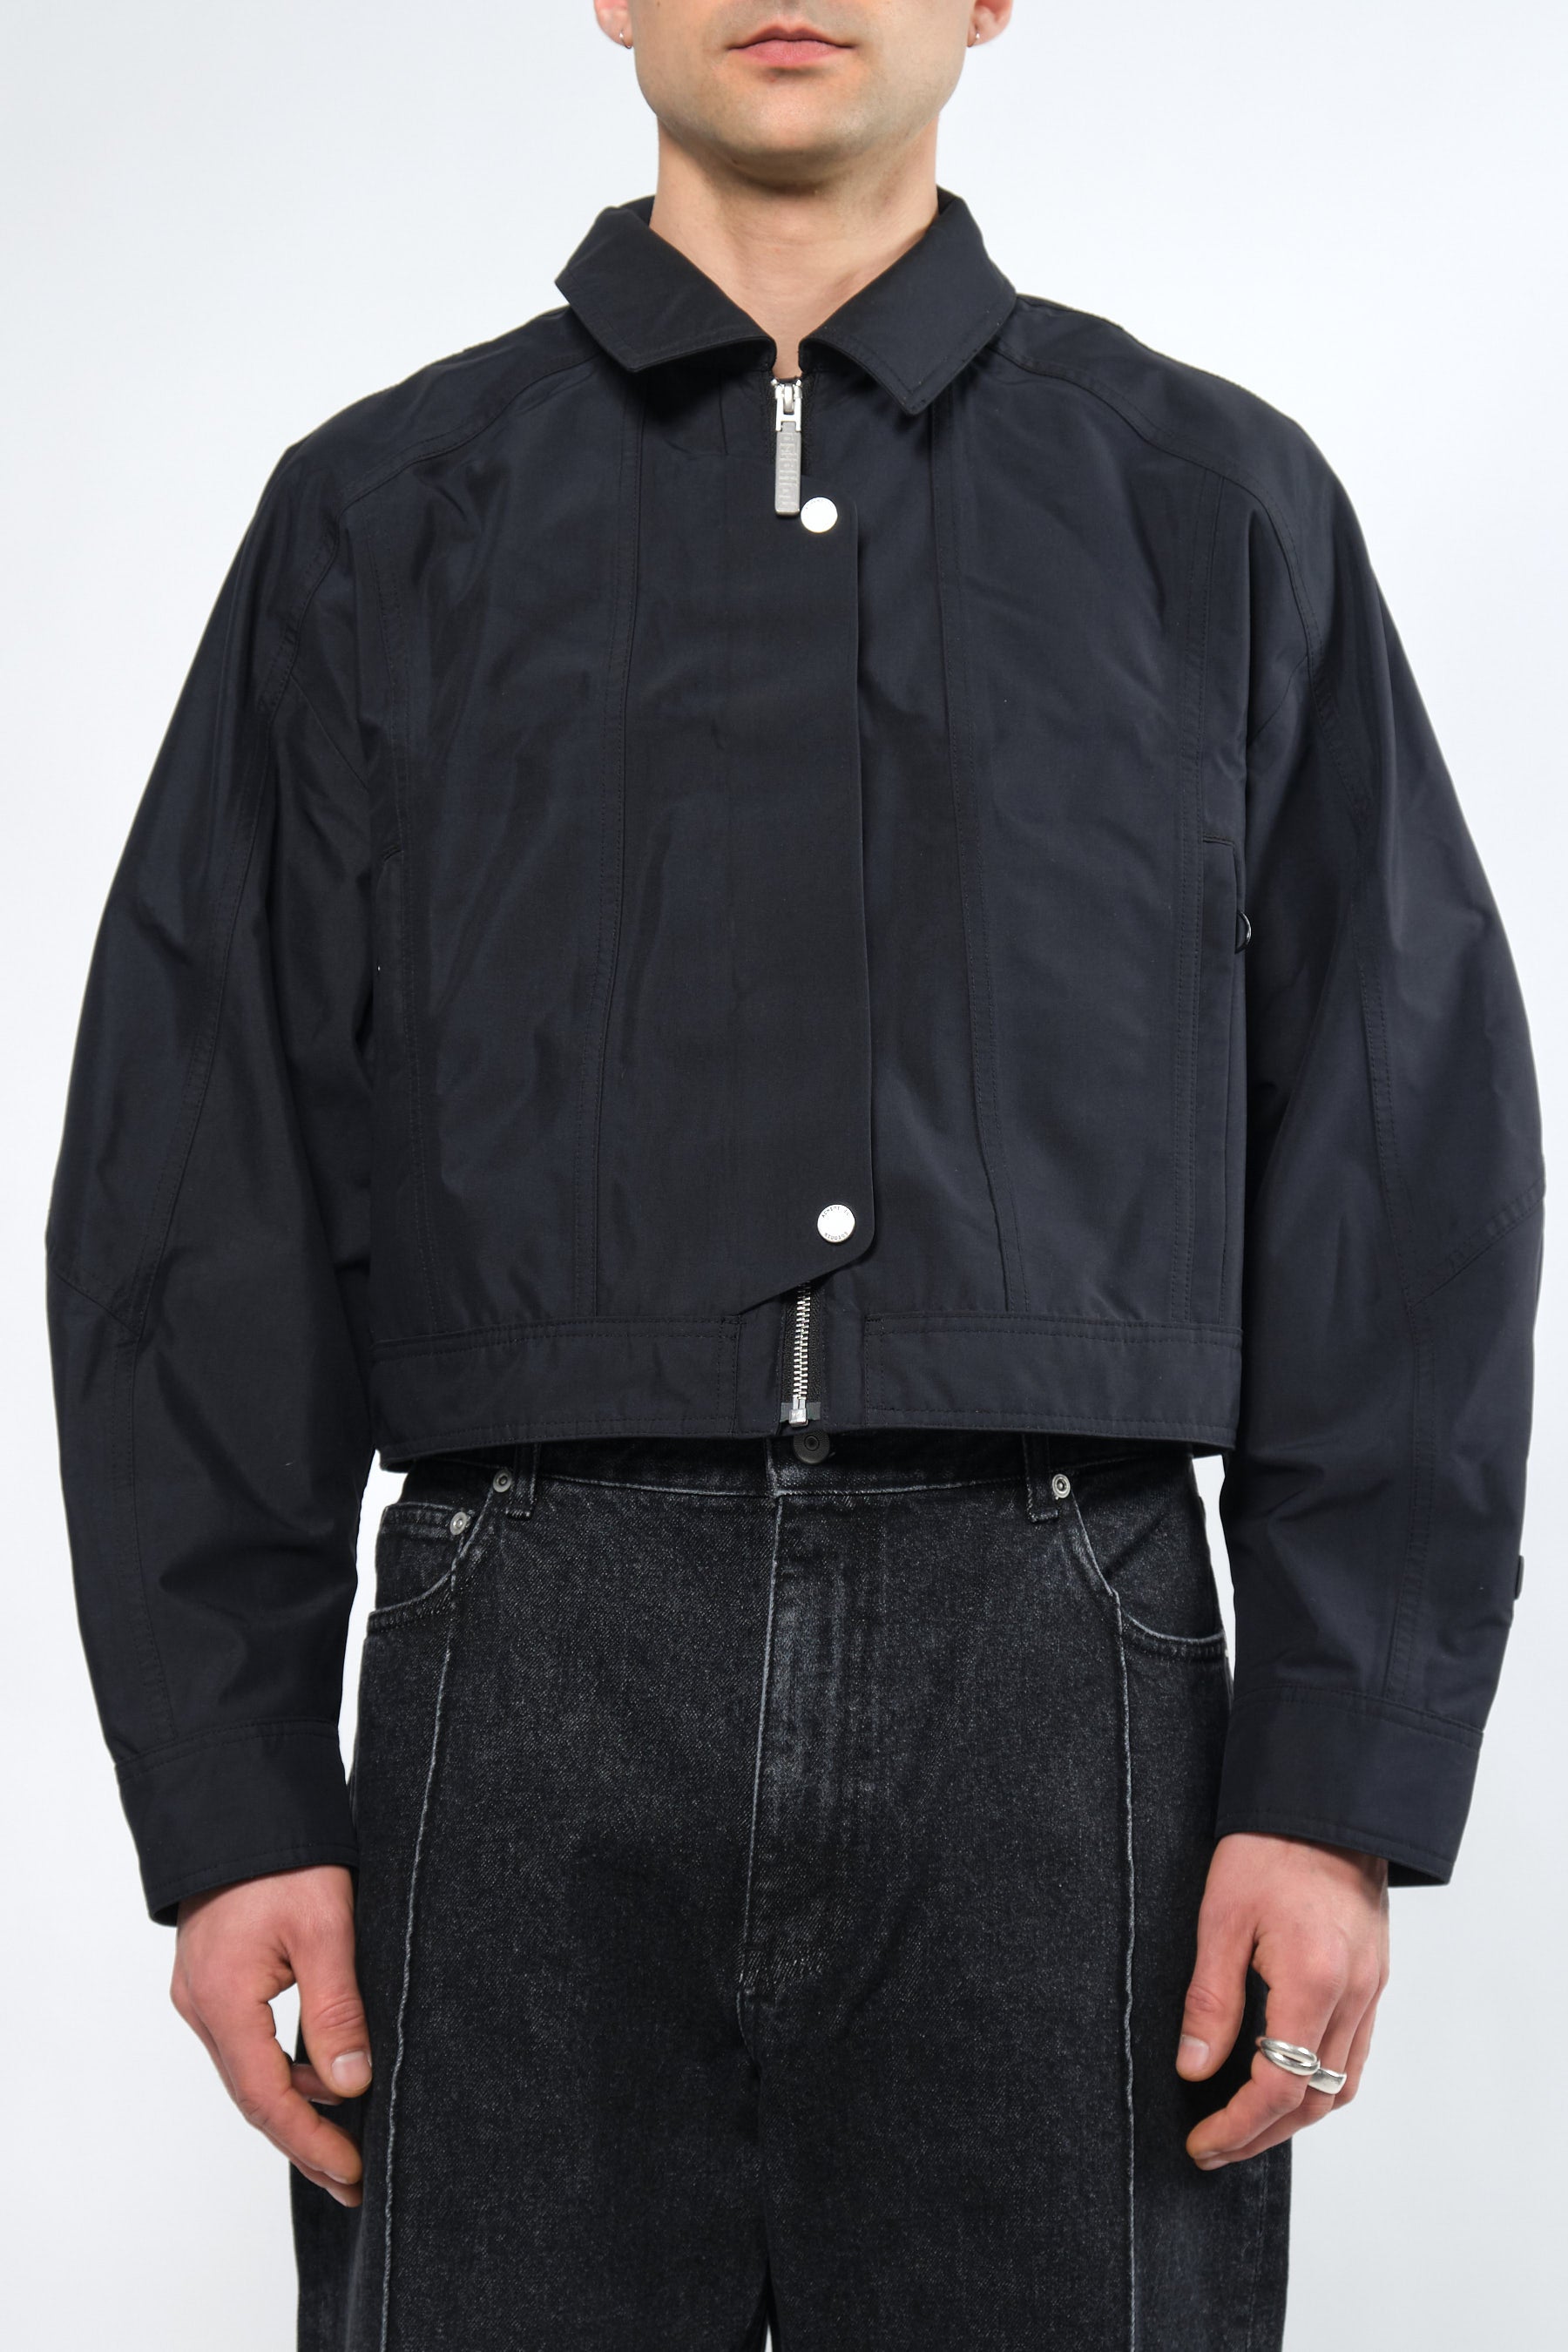  3L Black Waterproof Crop Rain Jacket with Hood - Adhere To  - 10